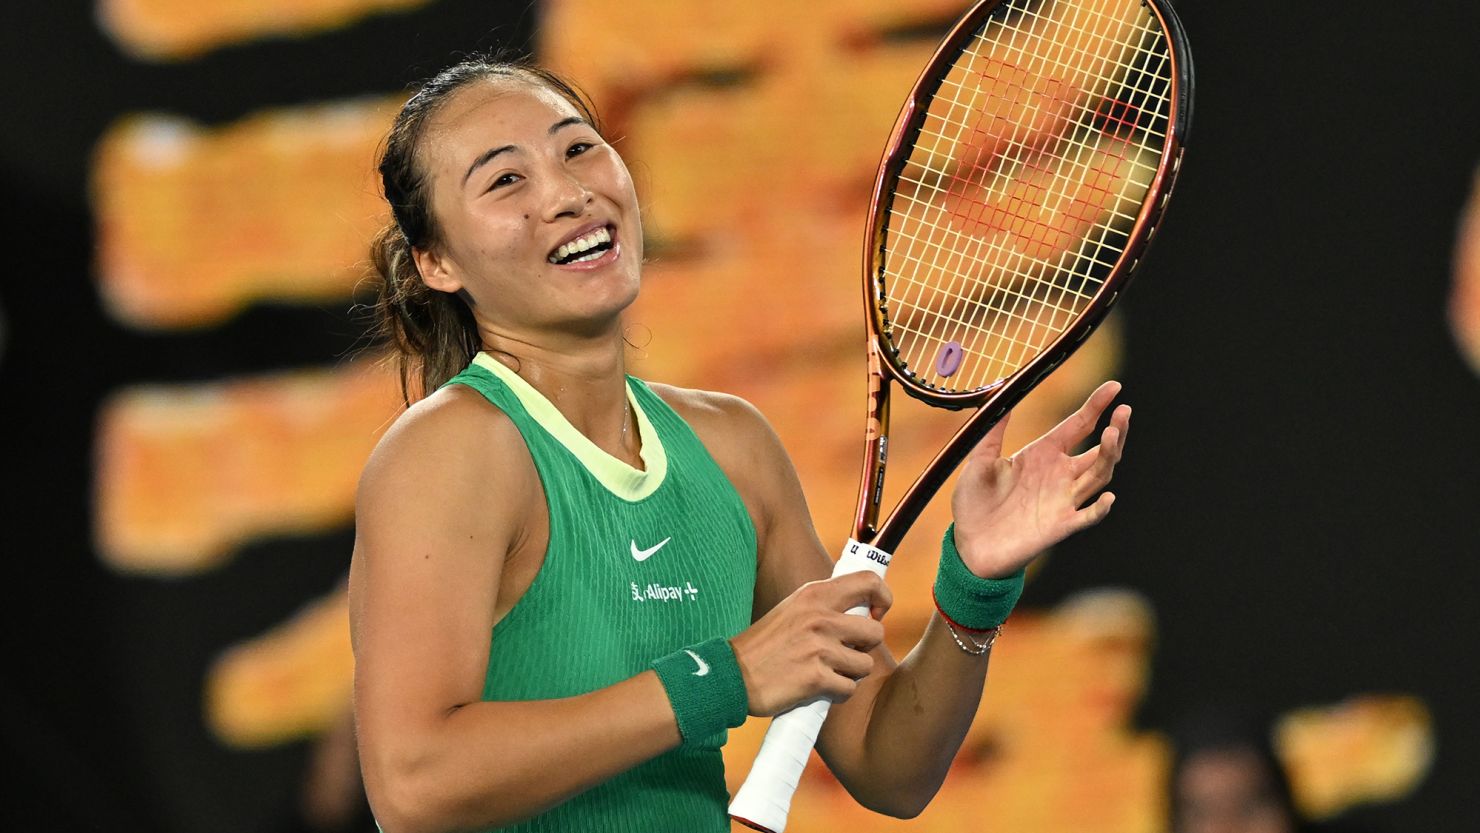 Zheng Qinwen is hoping to emulate her tennis idol, Li Na.